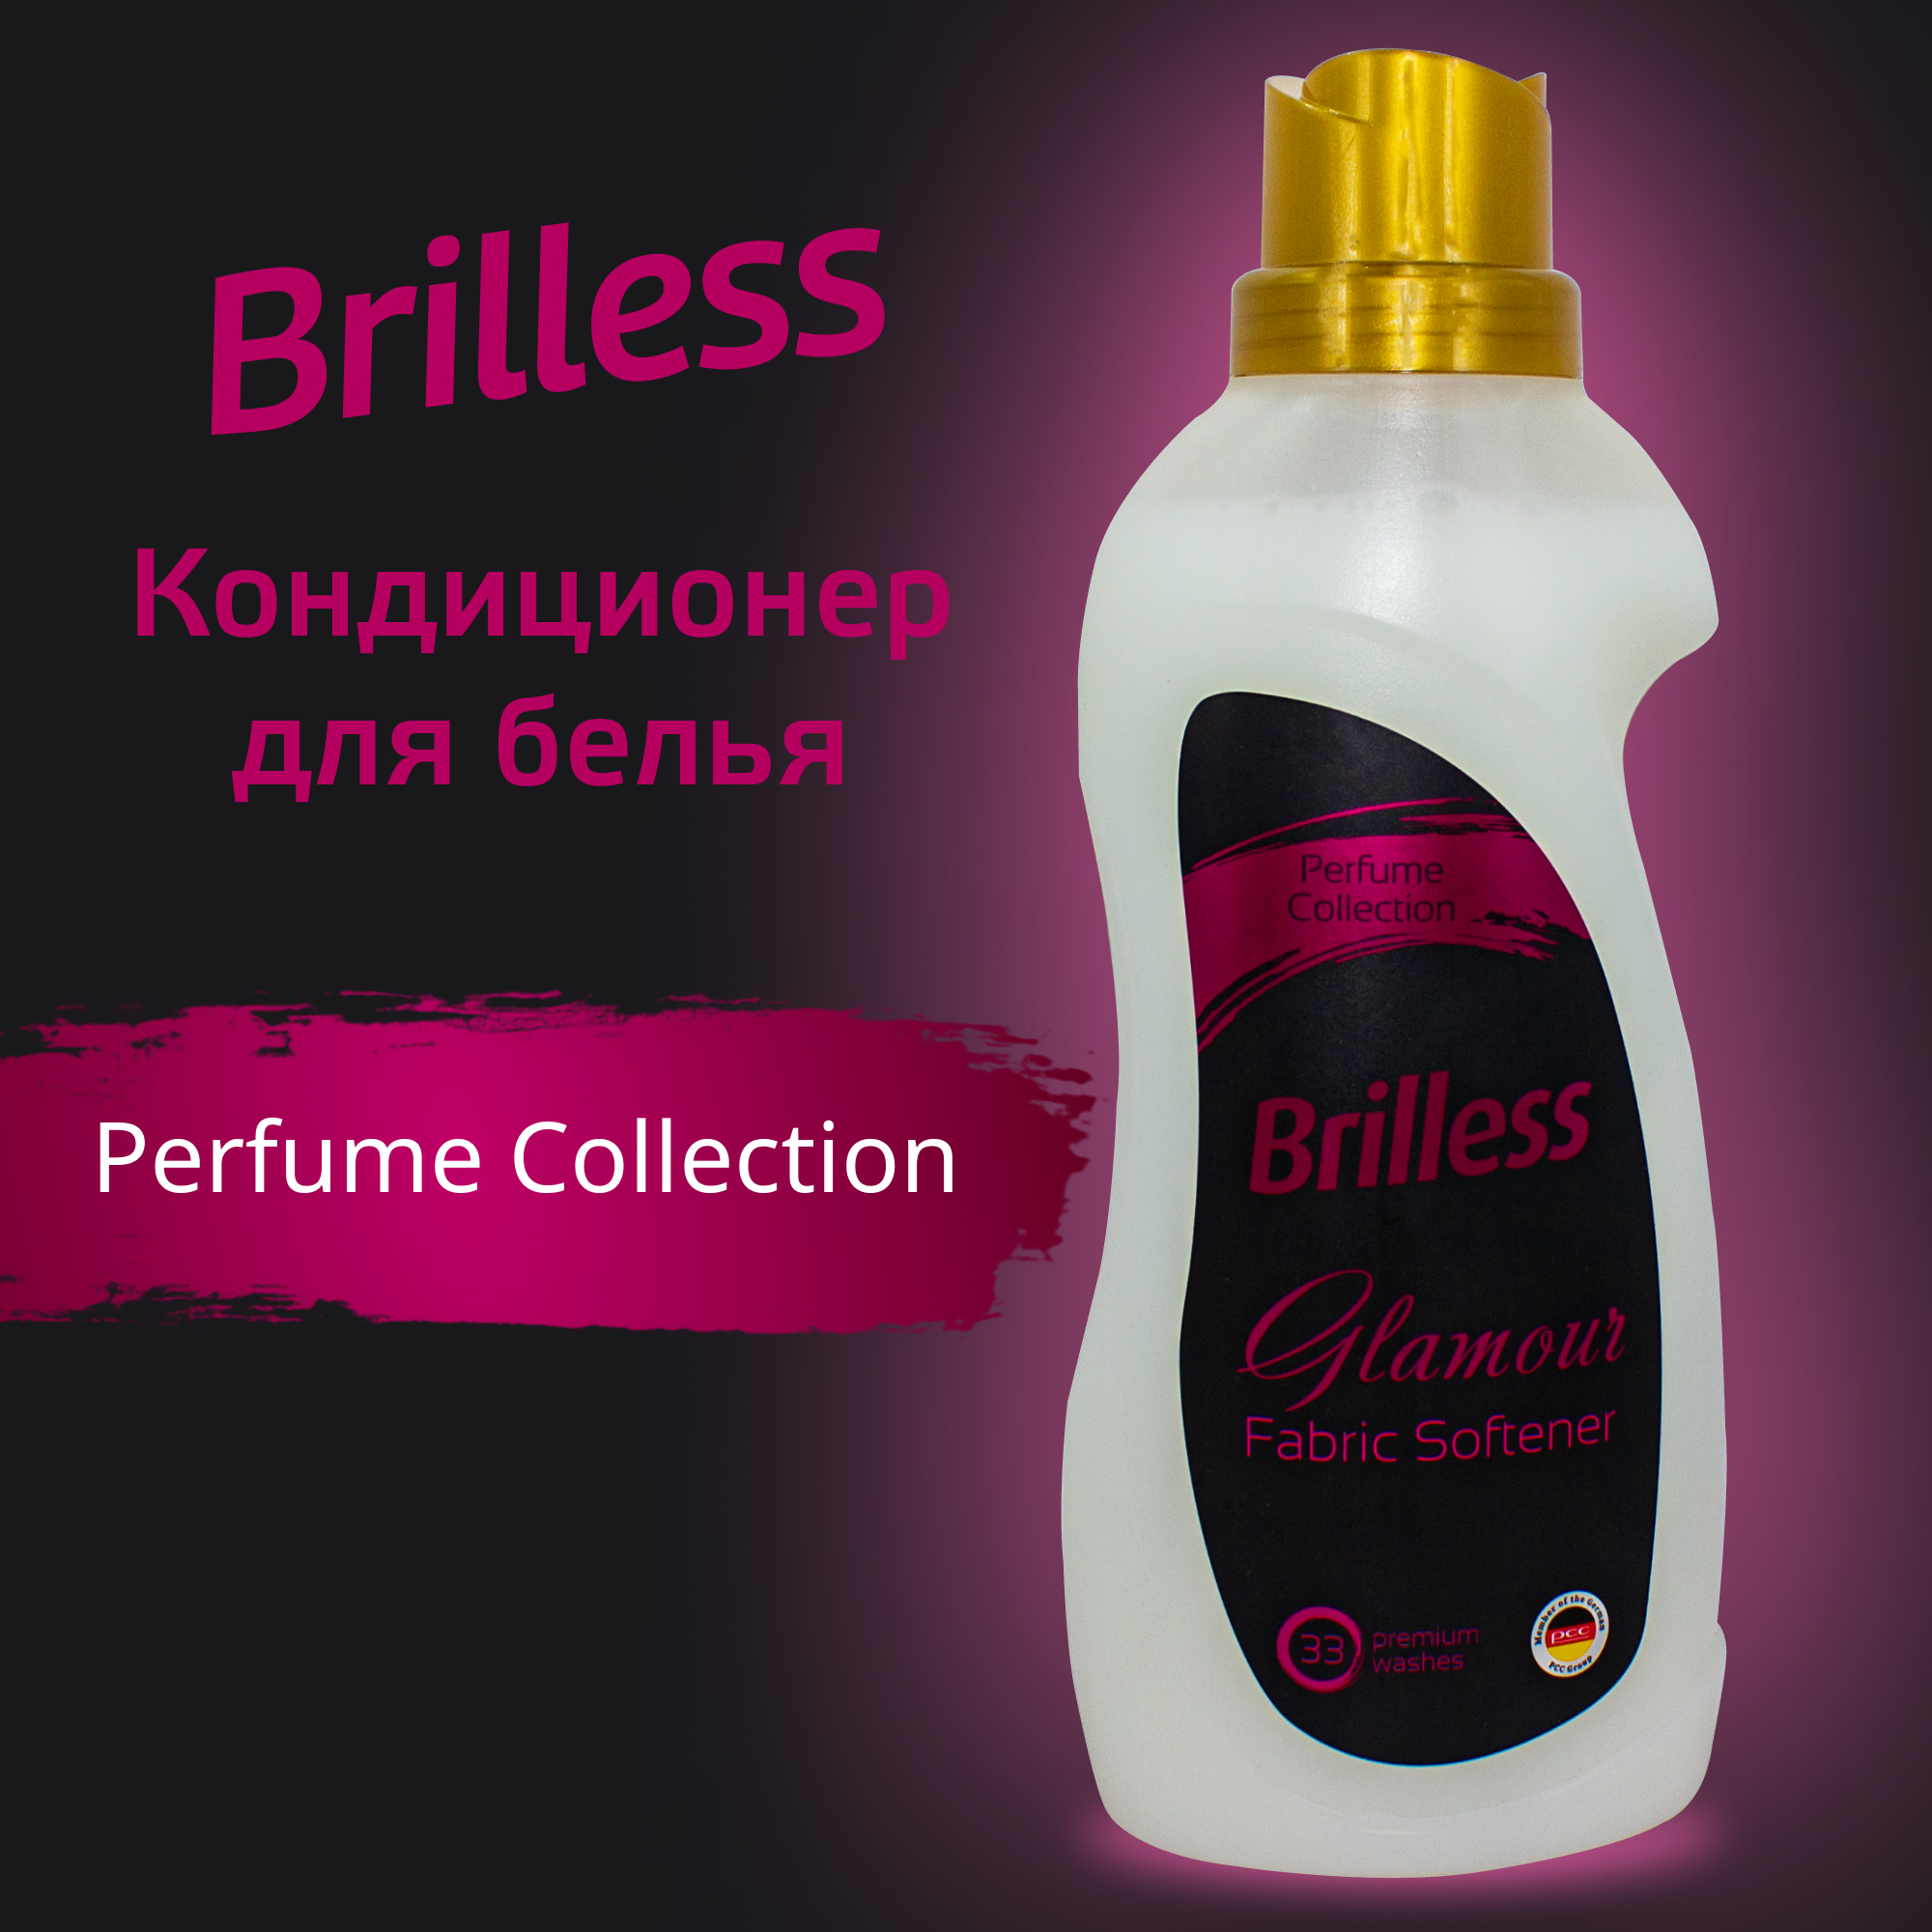 Кондиционер для белья Brilless Glamour Perfume Collection концентрированный 1 л